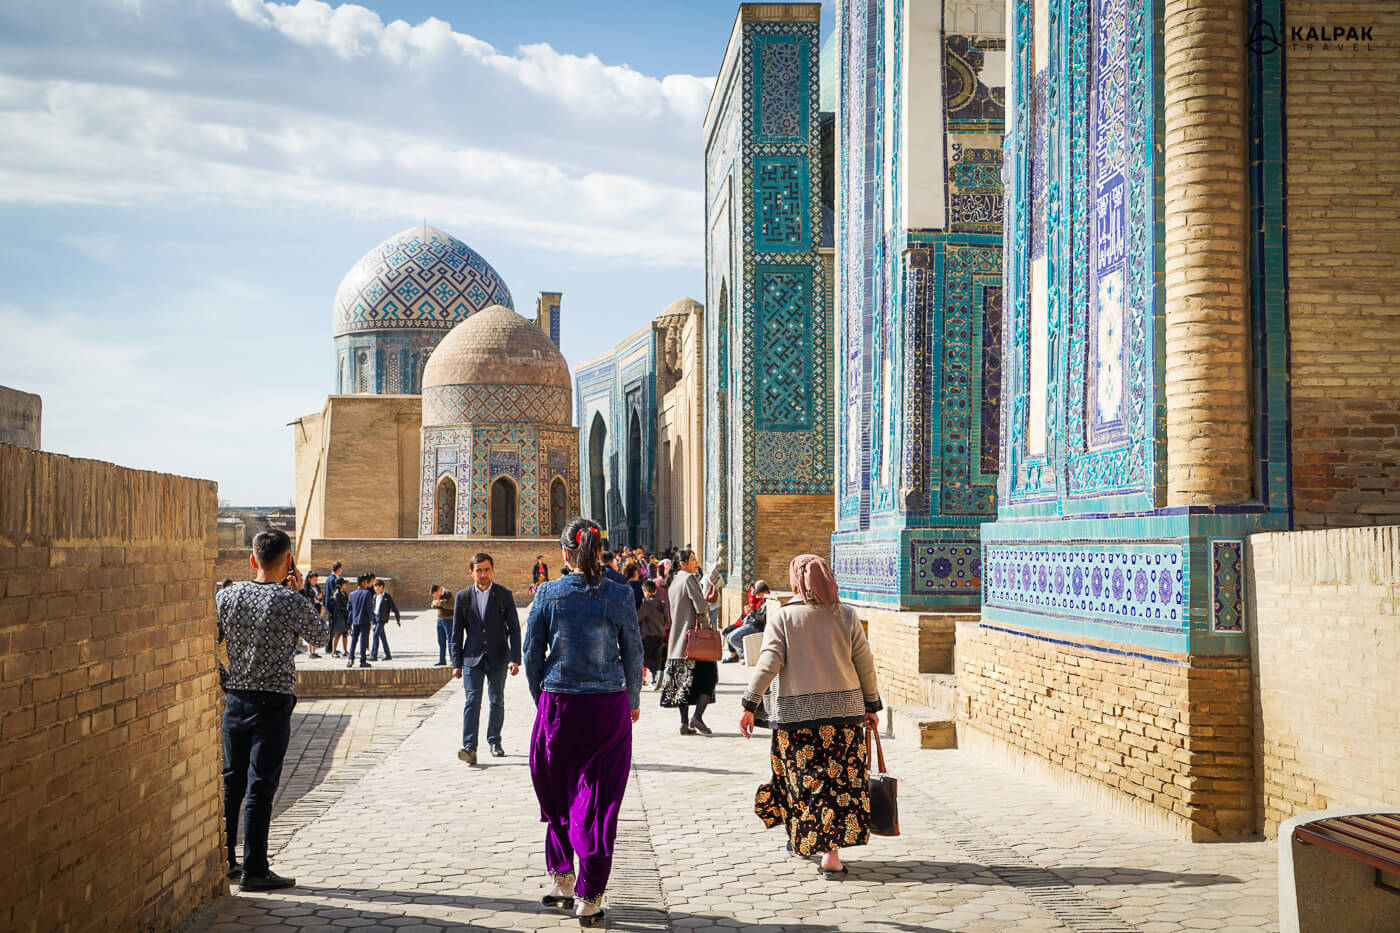 Shahi Zinda necropolis in Samarkand